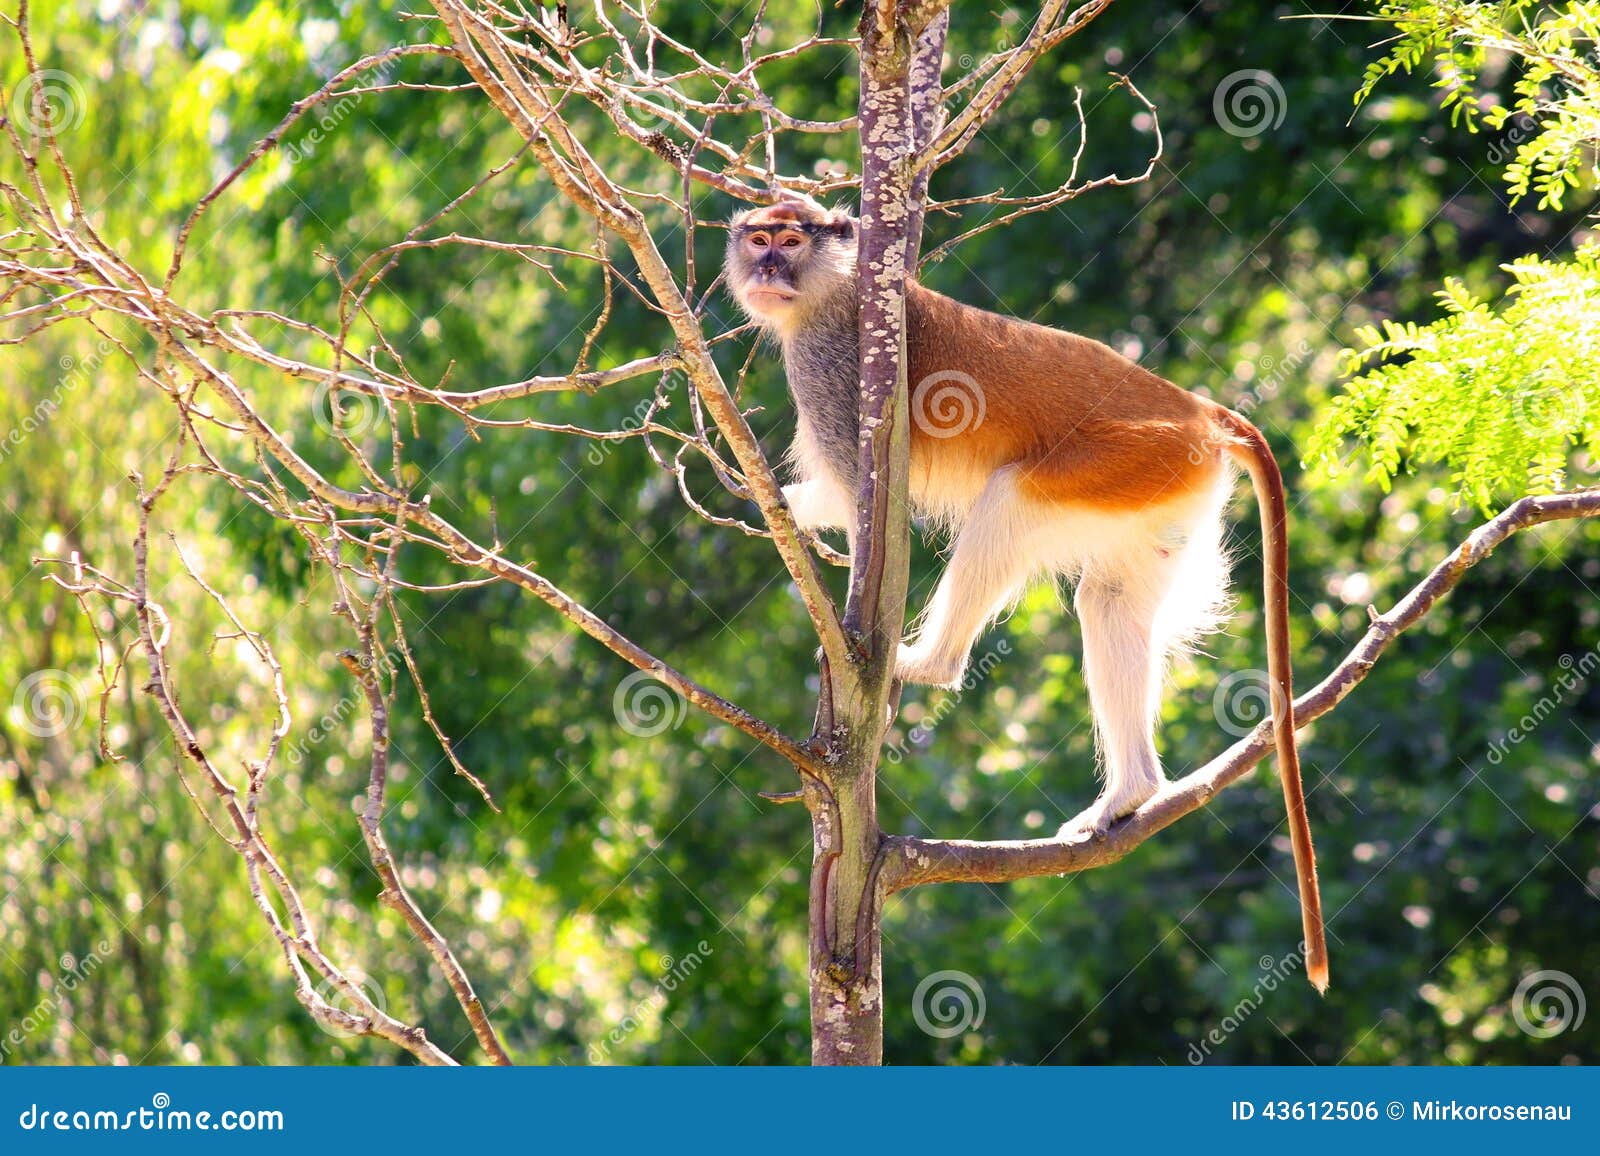 patas monkey erythrocebus patason tree